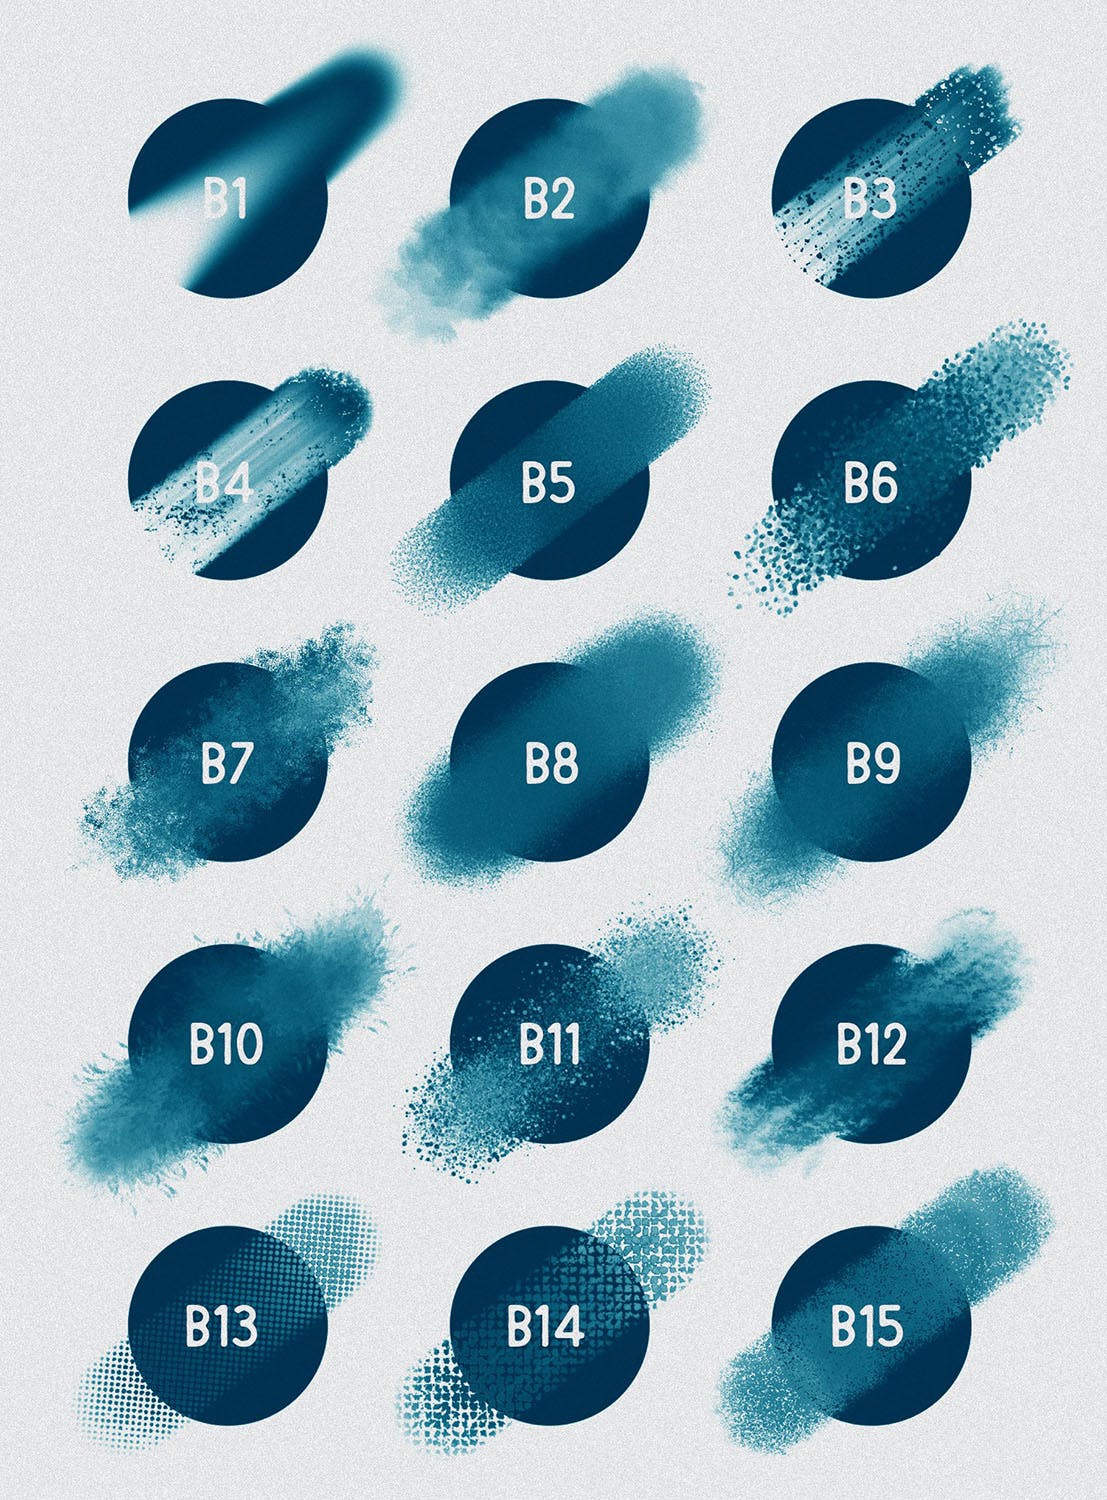 30种不同样式的Procreate专用混合笔刷亿图网易图库精选 Procreate: Blender Brushes插图(2)